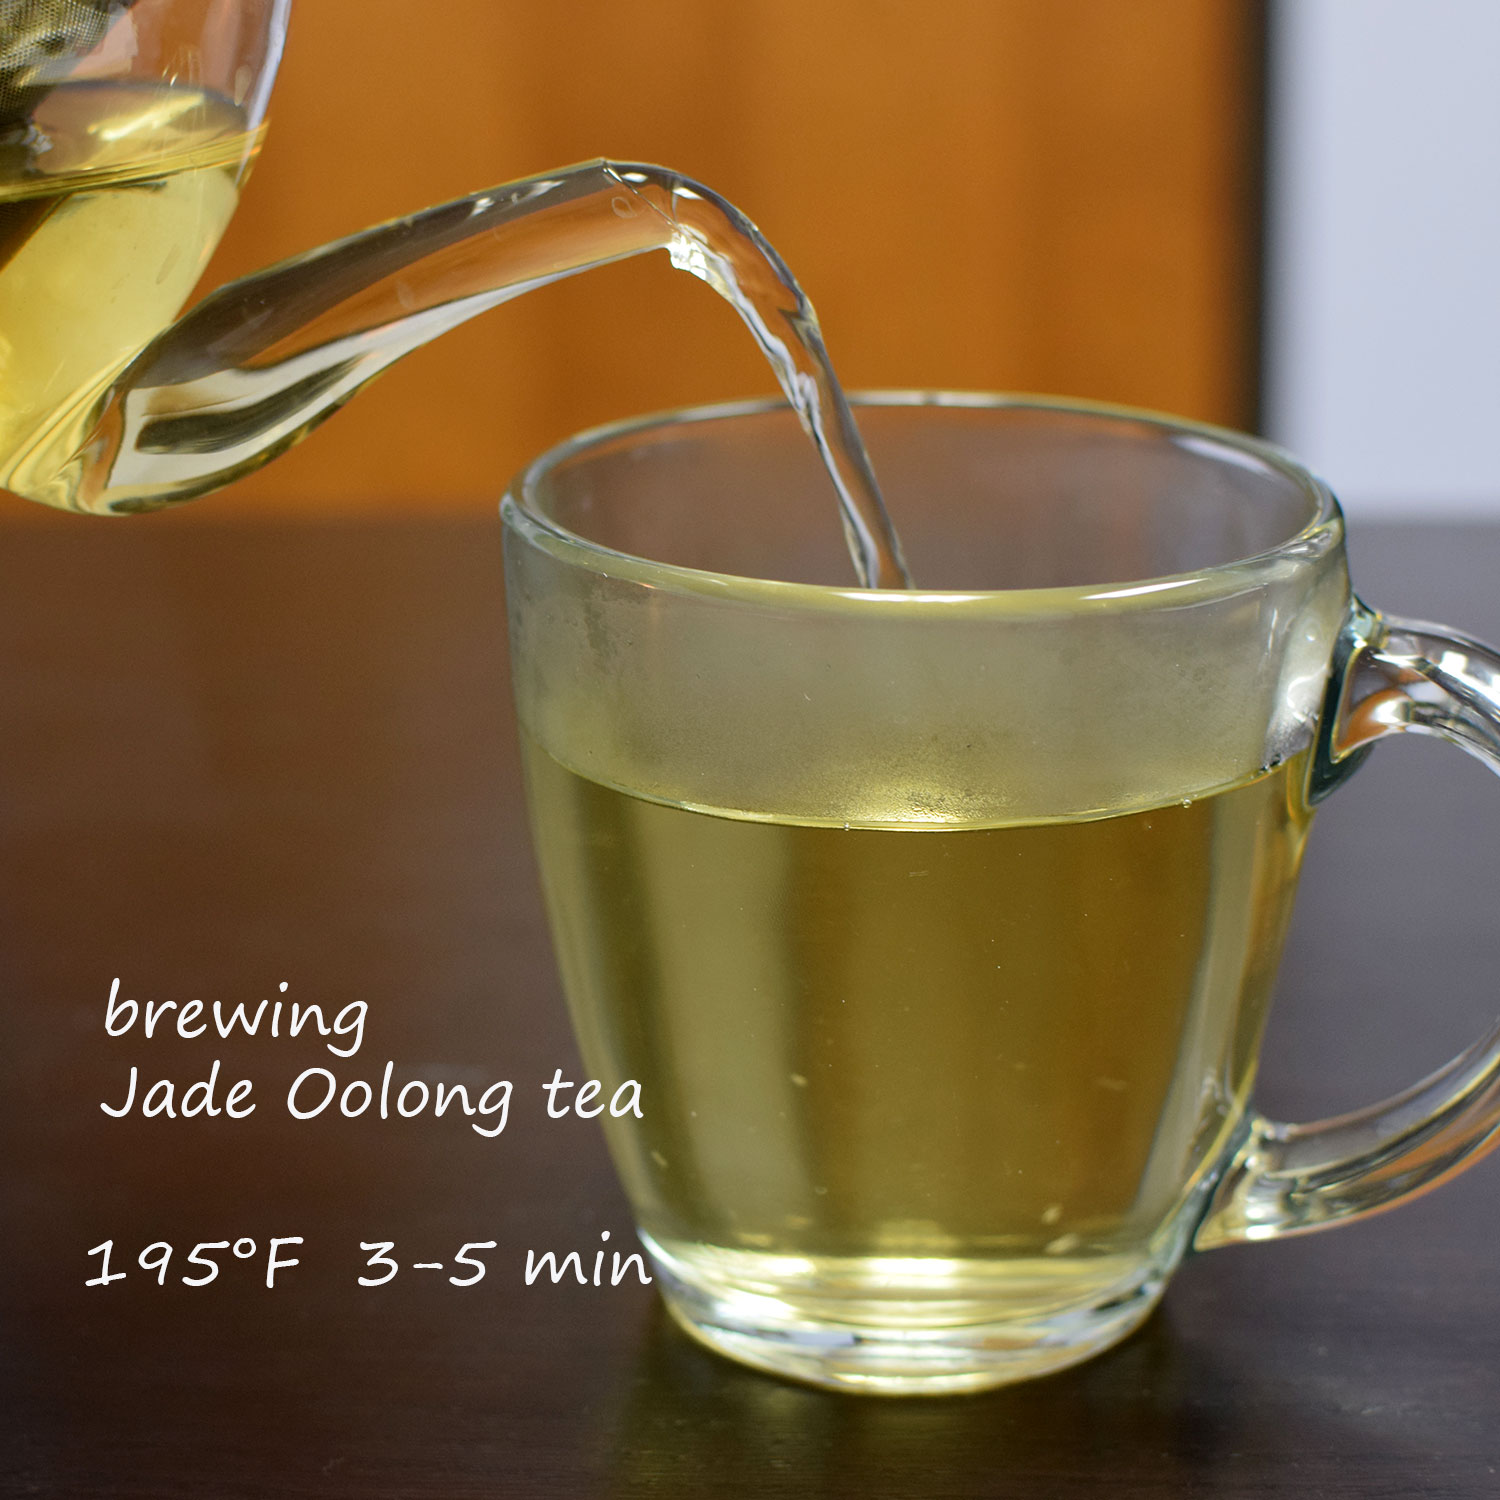 Jade oolong tea from Taiwan